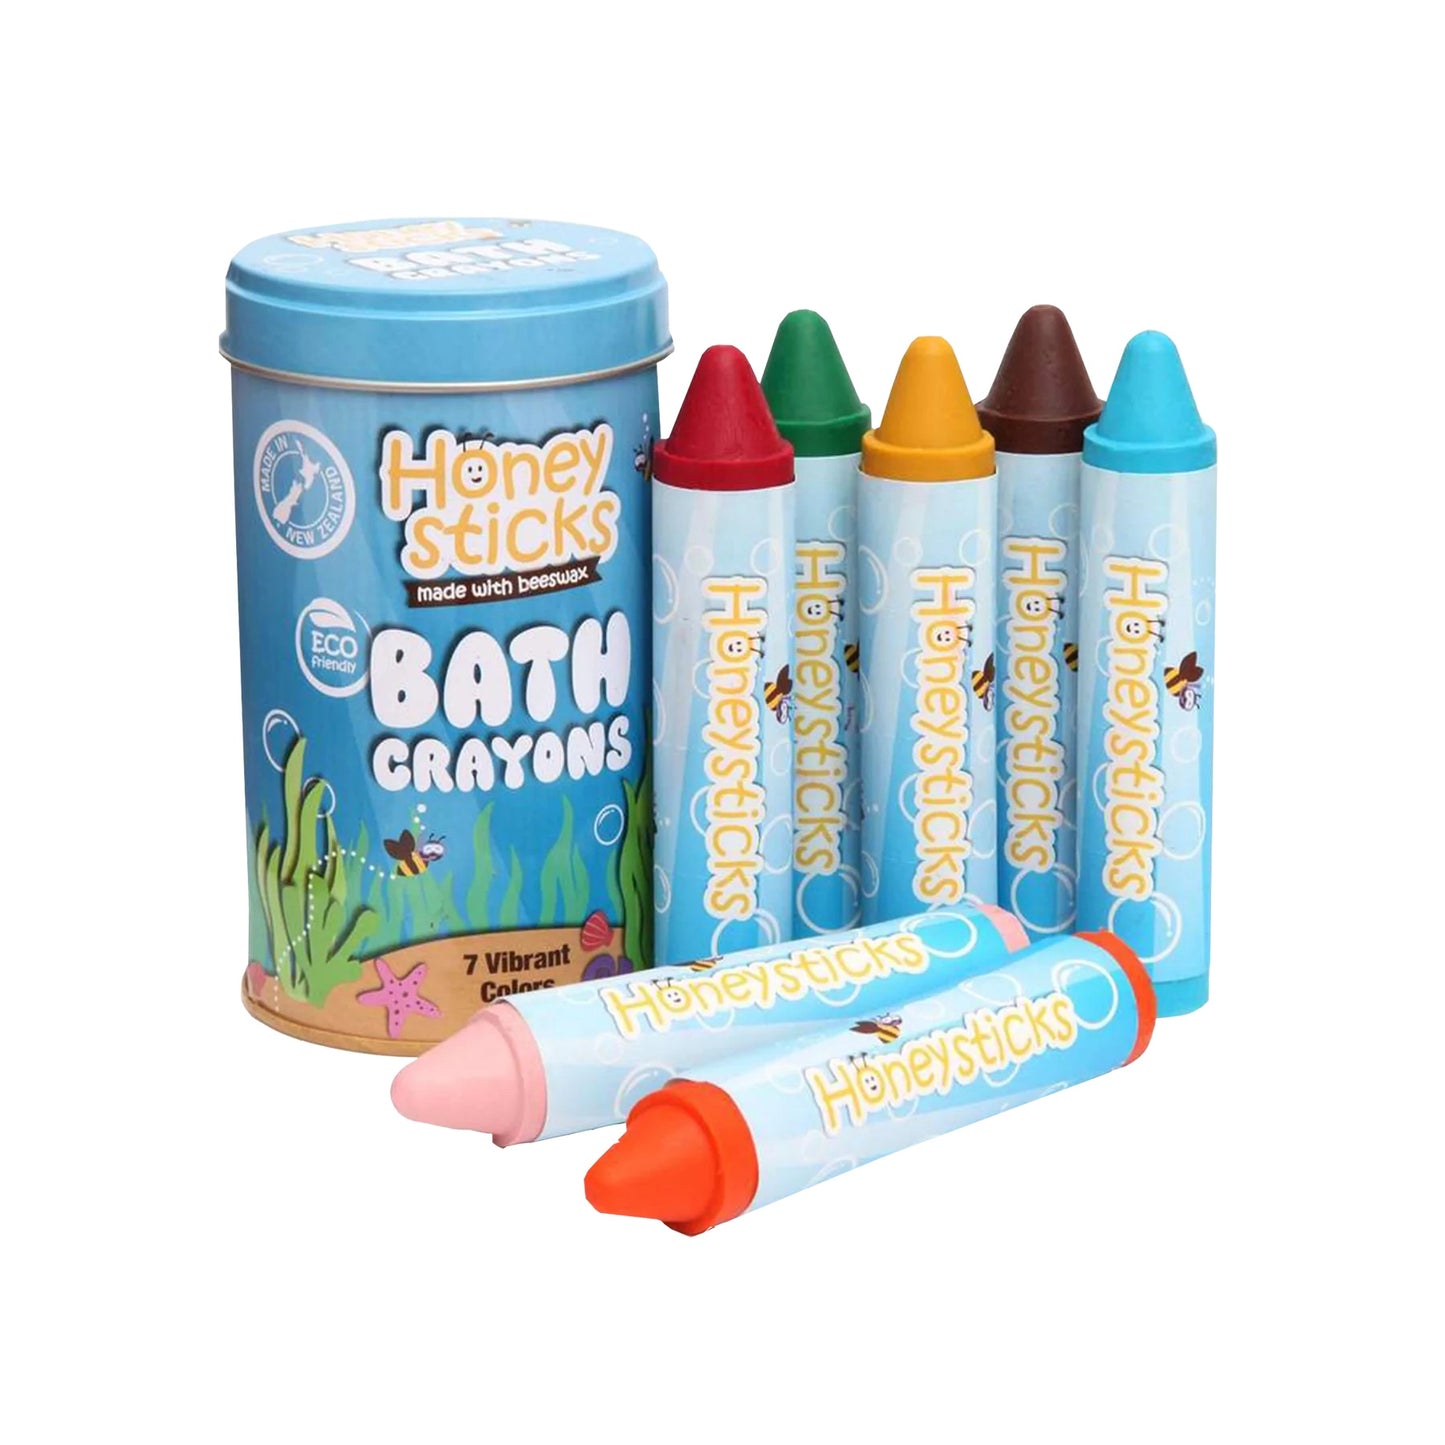 Beeswax Bath Crayons